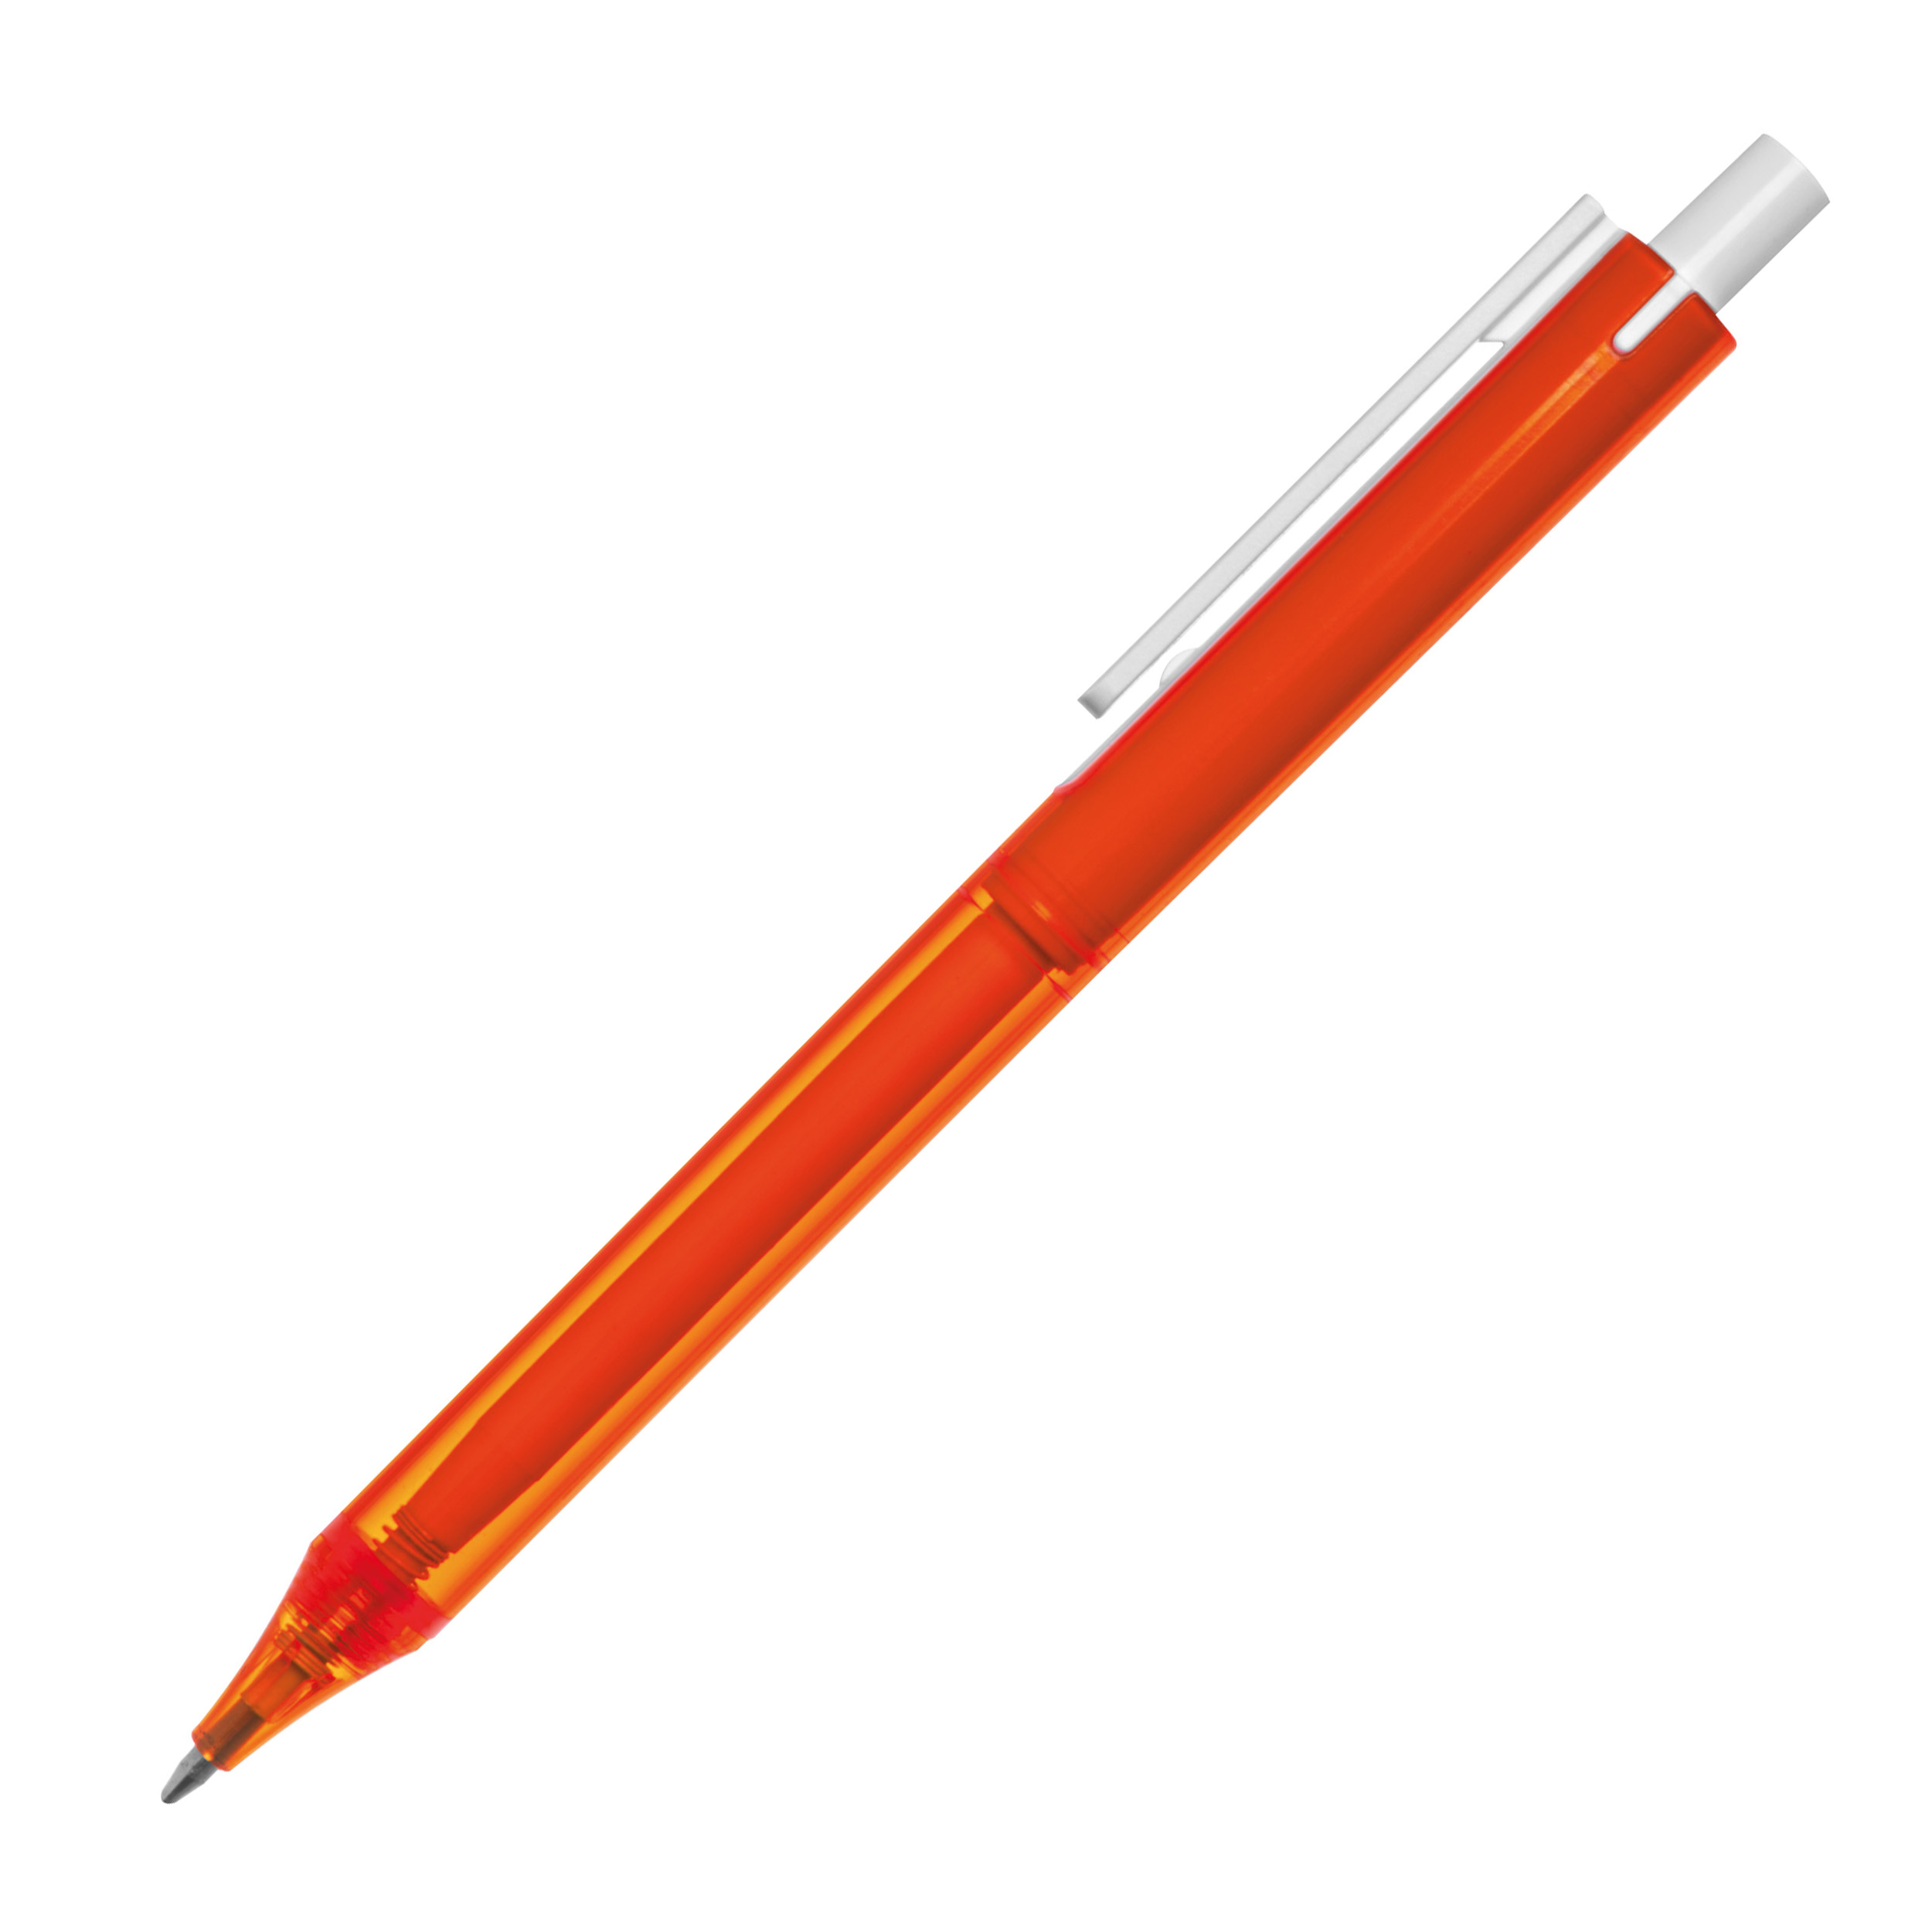 Transparenter Kugelschreiber mit weißem Clip